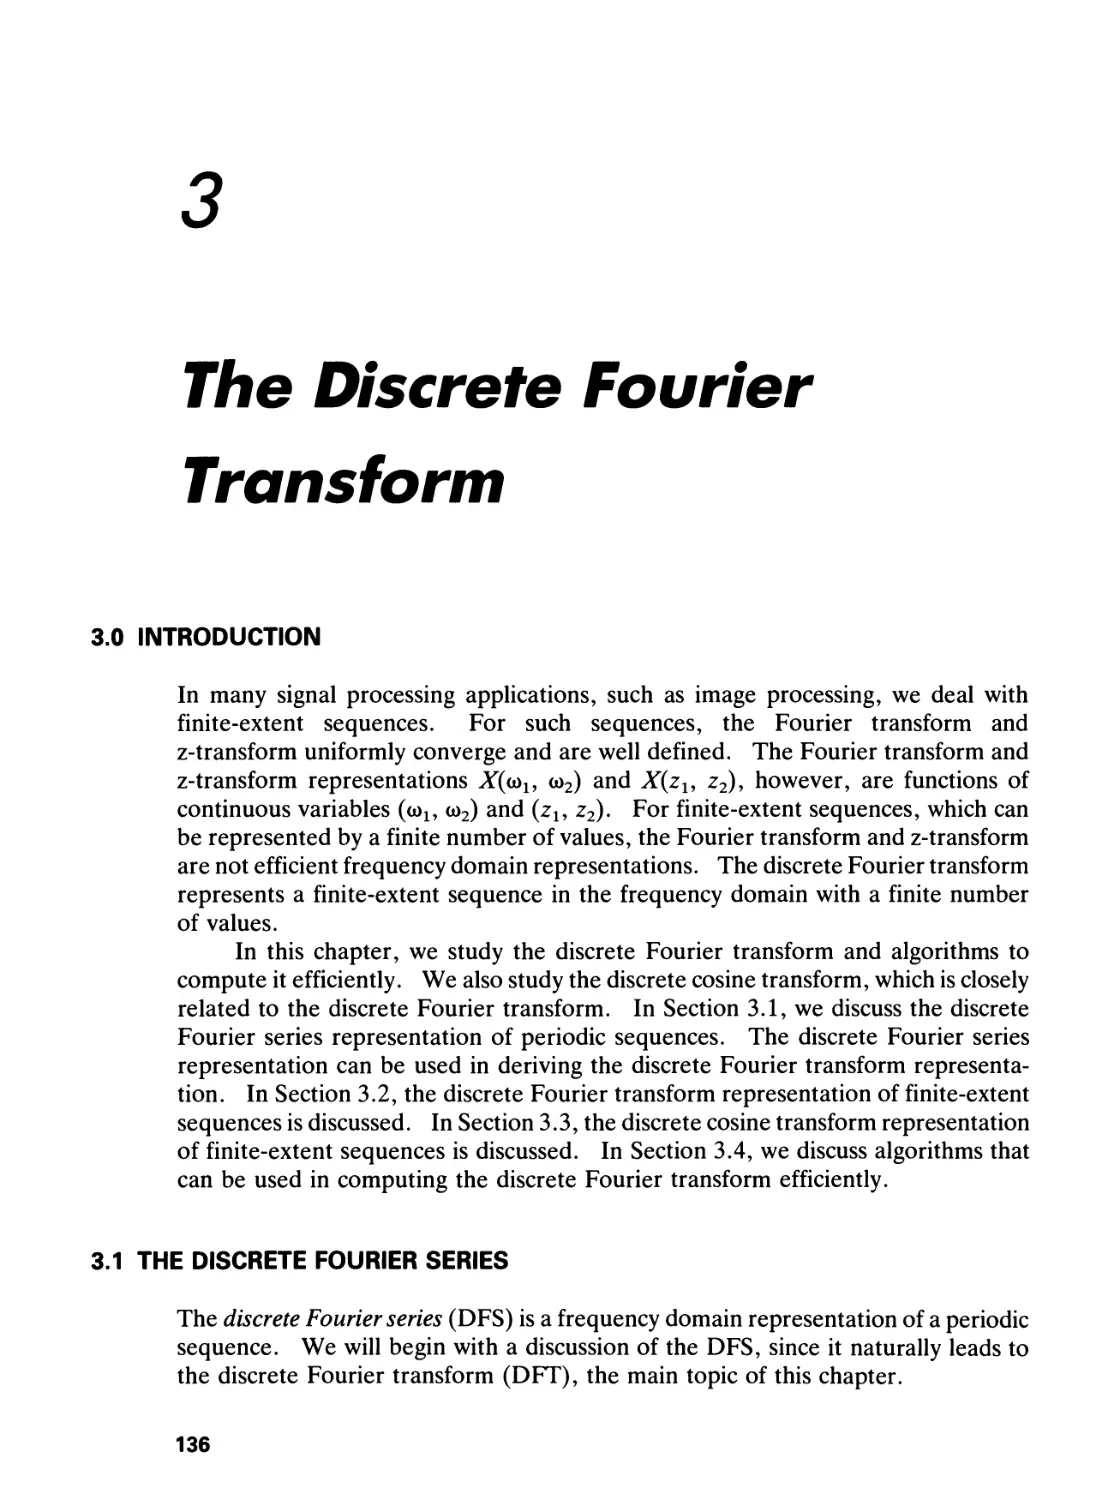 3 THE DISCRETE FOURIER TRANSFORM
3.1 The Discrete Fourier Series